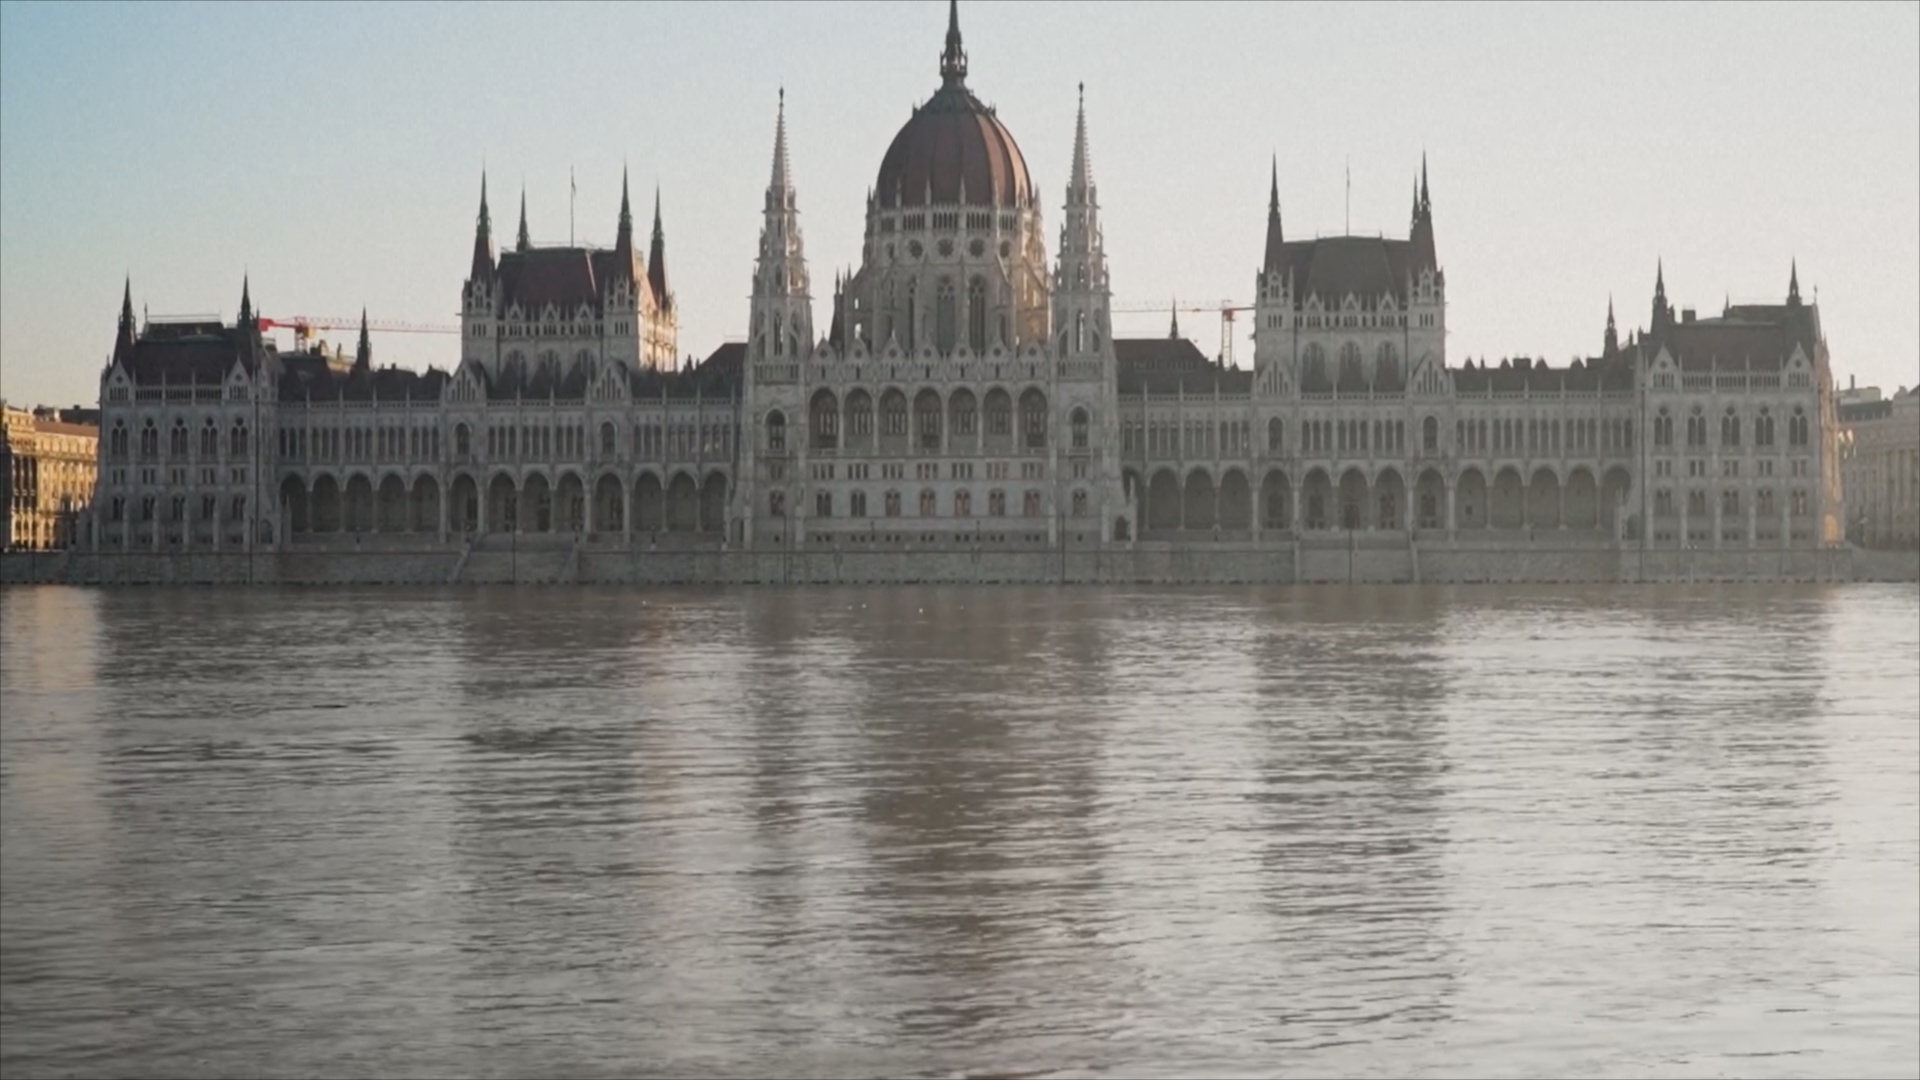 Такого не видели много лет: в Будапеште сильно разлился Дунай